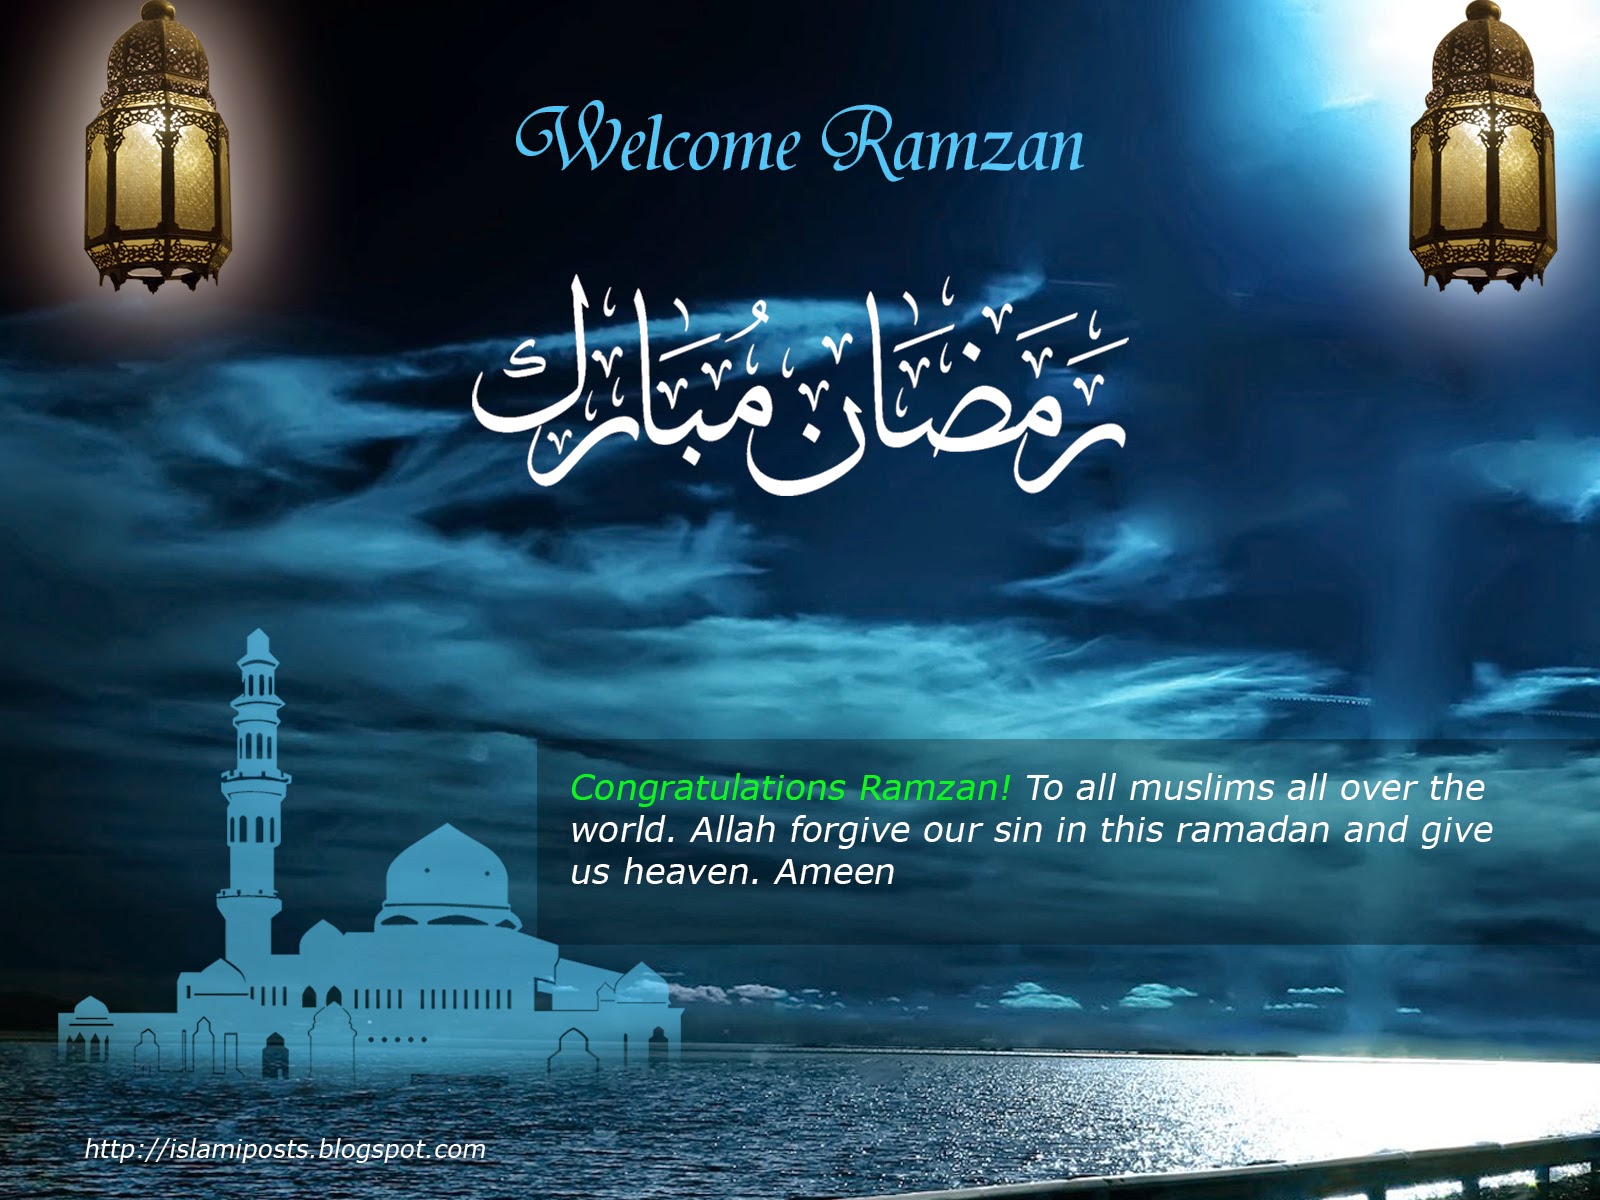 Поздравляю с окончанием месяца рамадан. Поздравление с Рамаданом. Поздравлениес началомсаященного месяца Ромадан. С началом праздника Рамадан. Поздравление с НАЧАЛОМА Рамаданом.